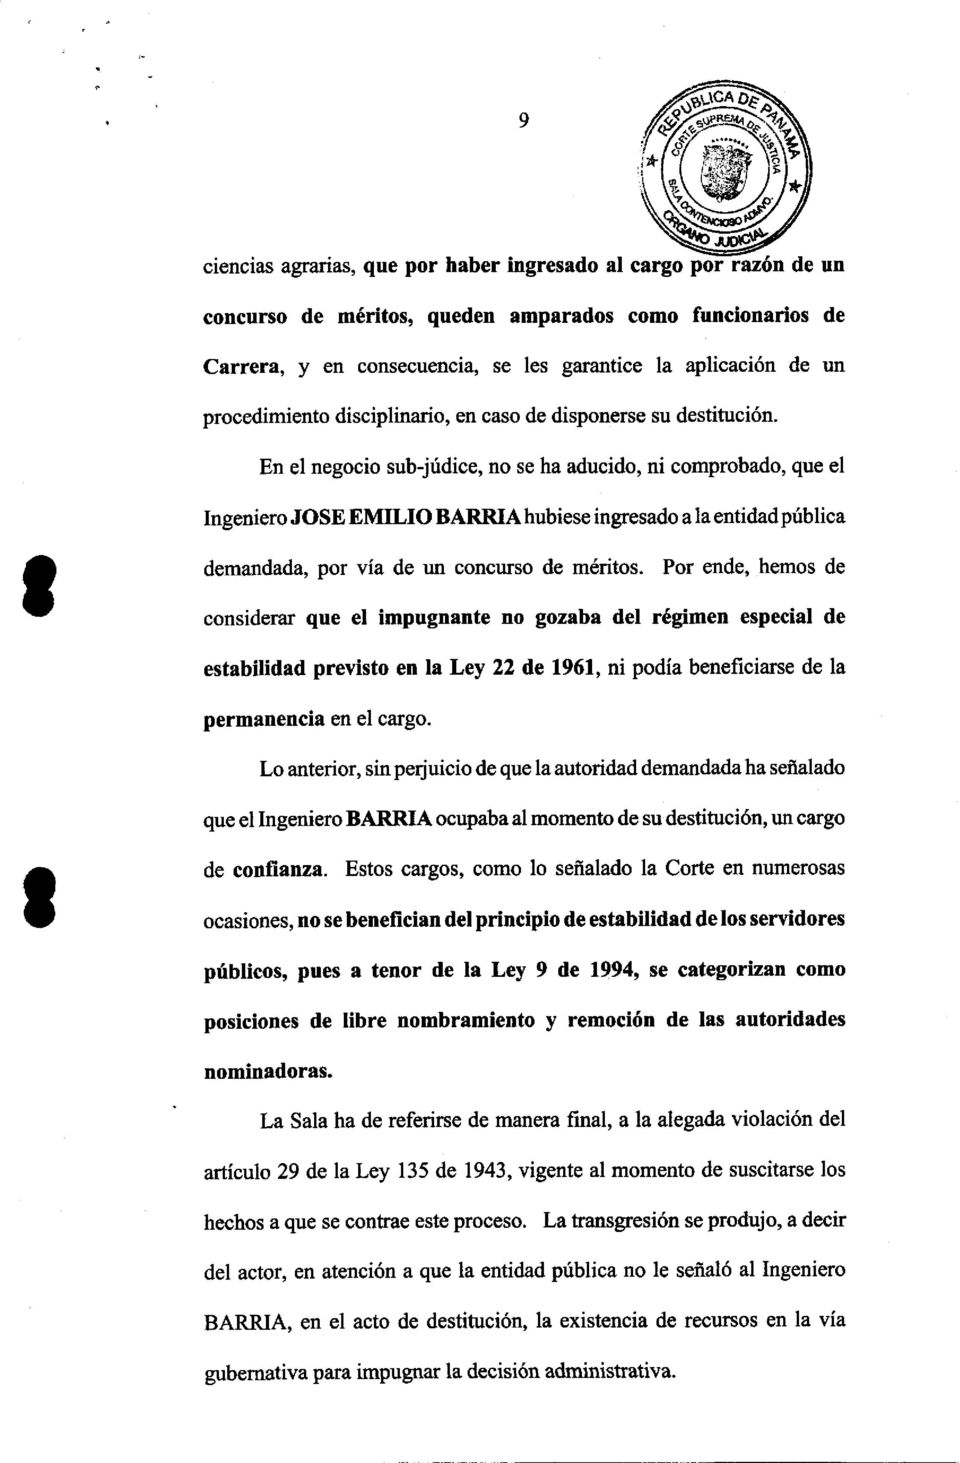 En el negocio sub-júdice, no se ha aducido, ni comprobado, que el Ingeniero JOSE EMILIO BARRIA hubiese ingresado a la entidad pública demandada, por vía de un concurso de méritos.